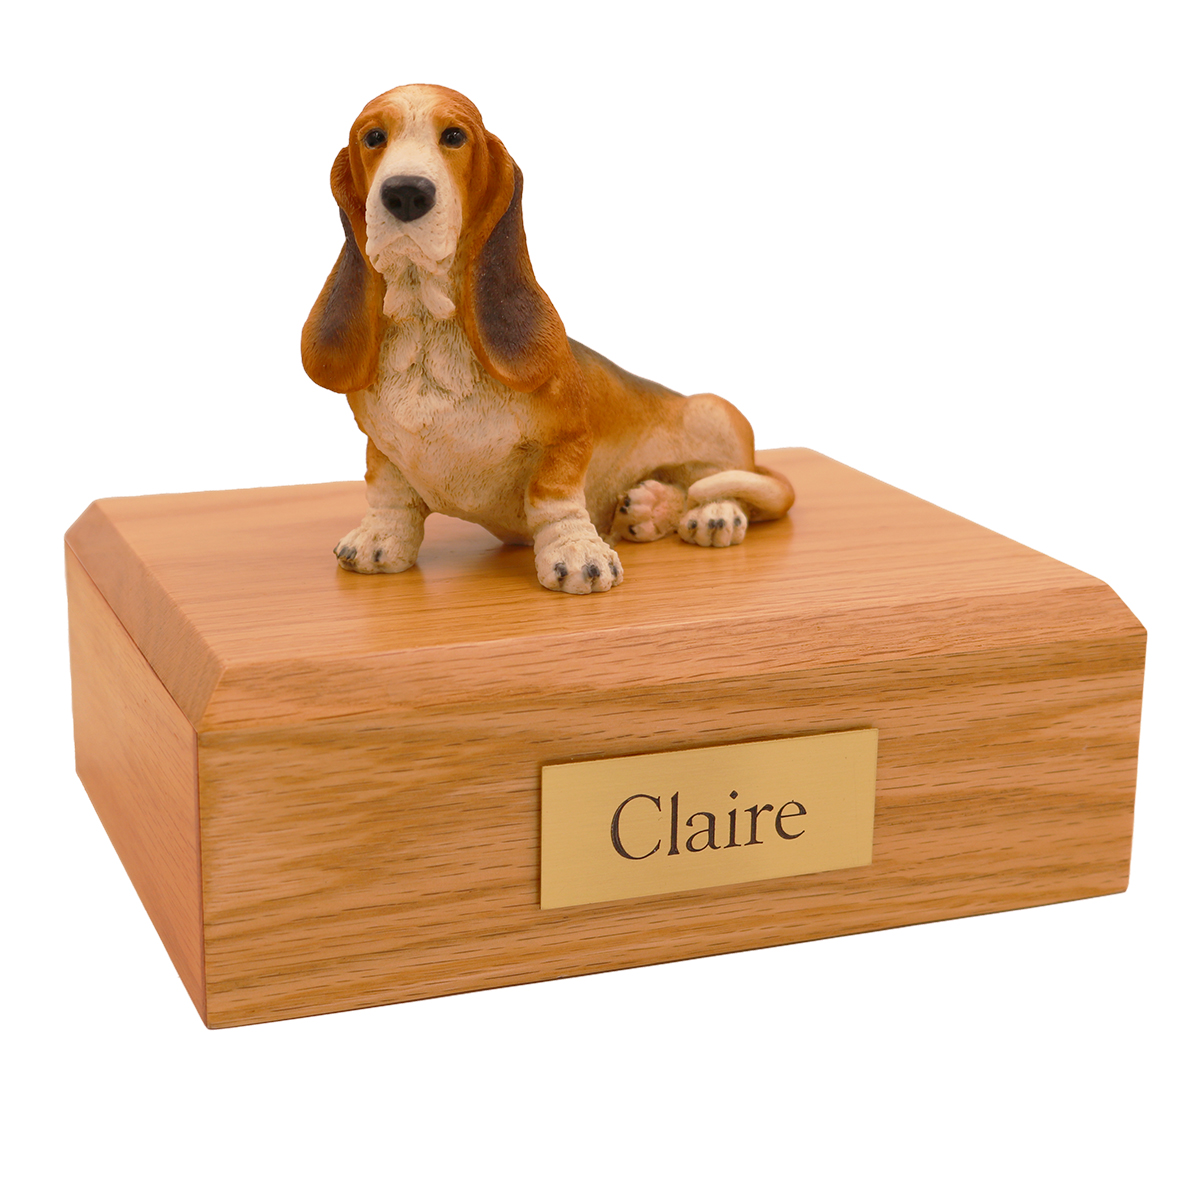 Dog, Basset Hound - Figurine Urn